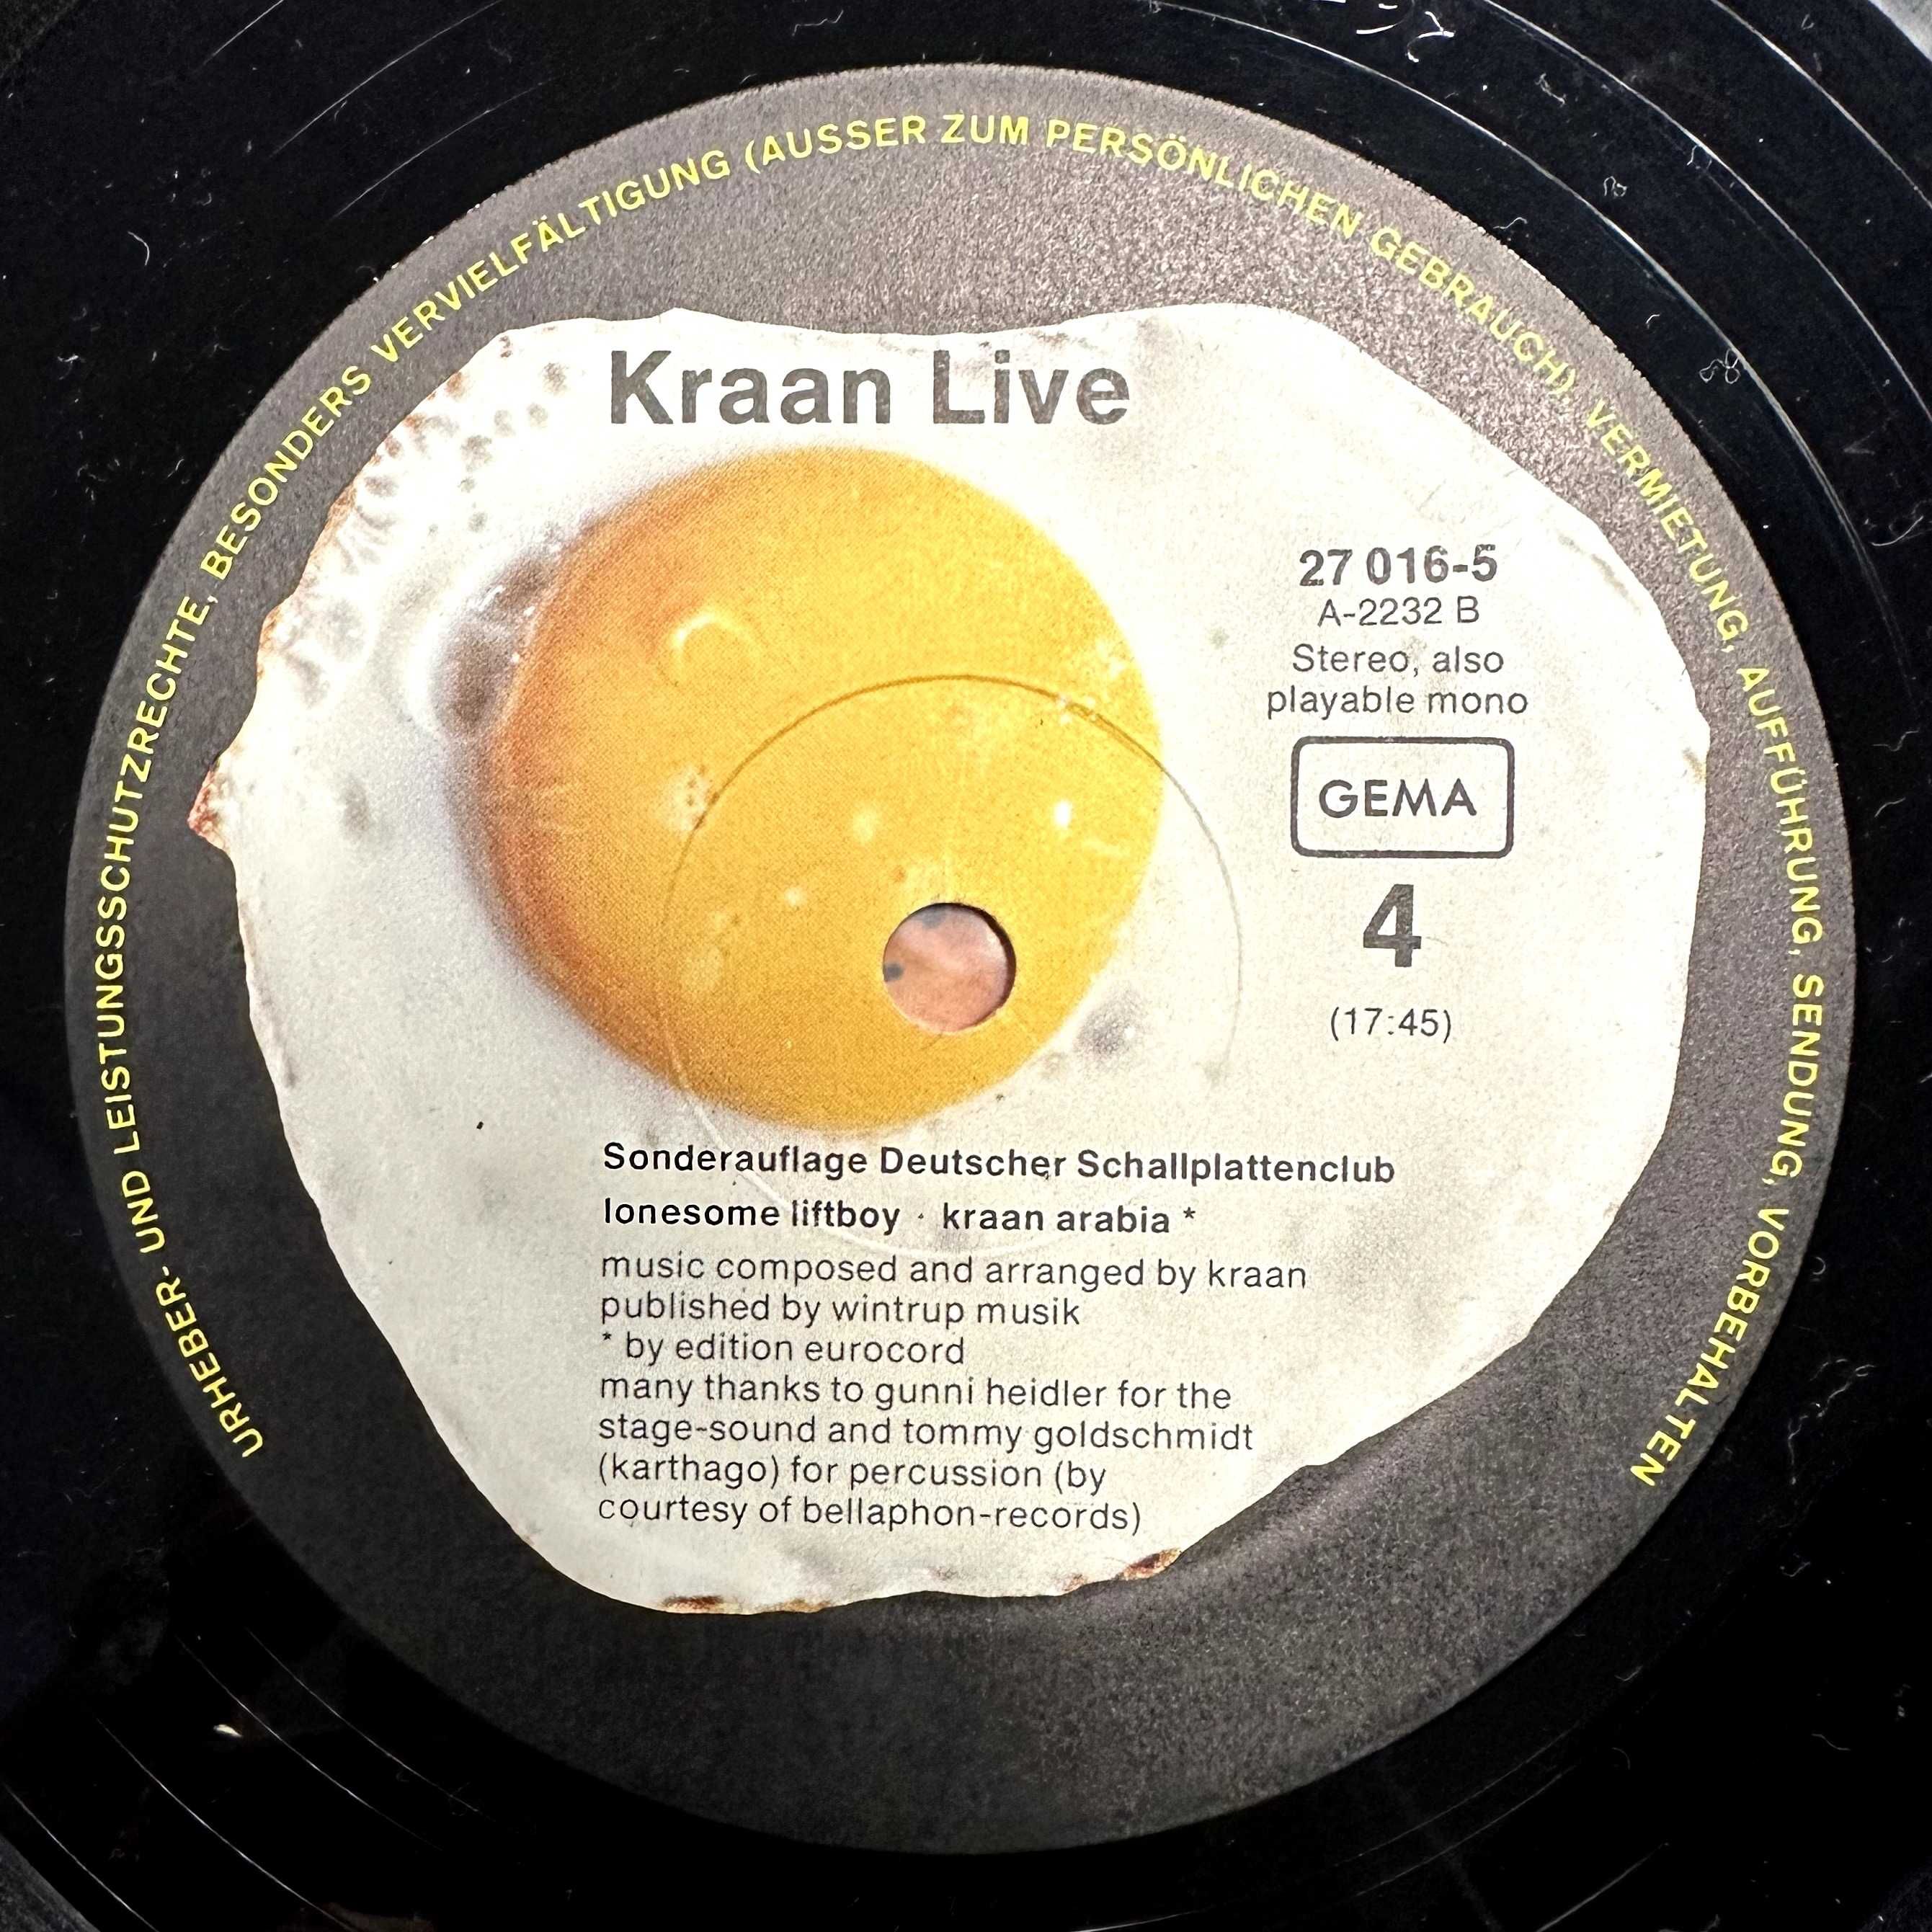 Kraan Live (Vinyl, 1975, Germany)